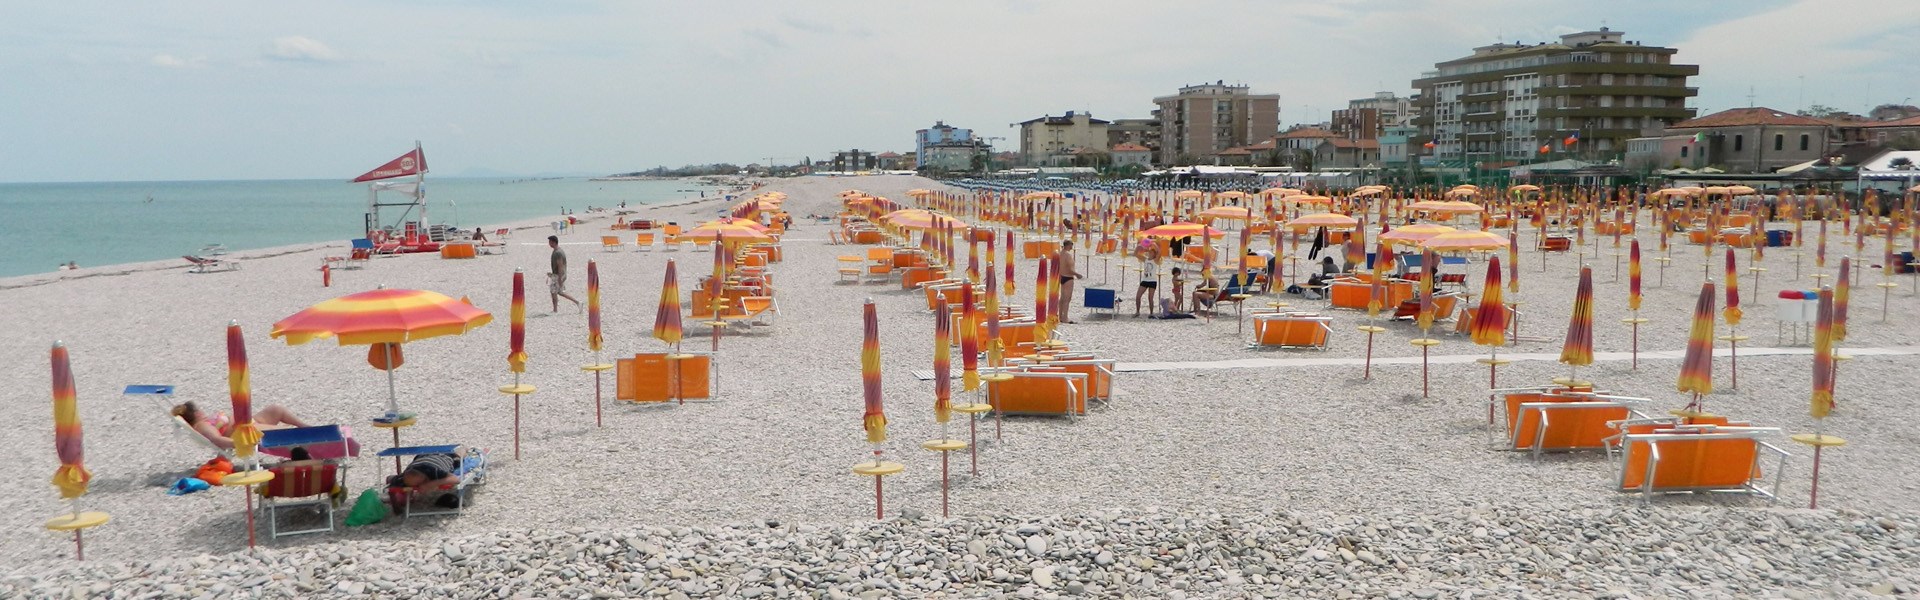 Fano - Spiaggia